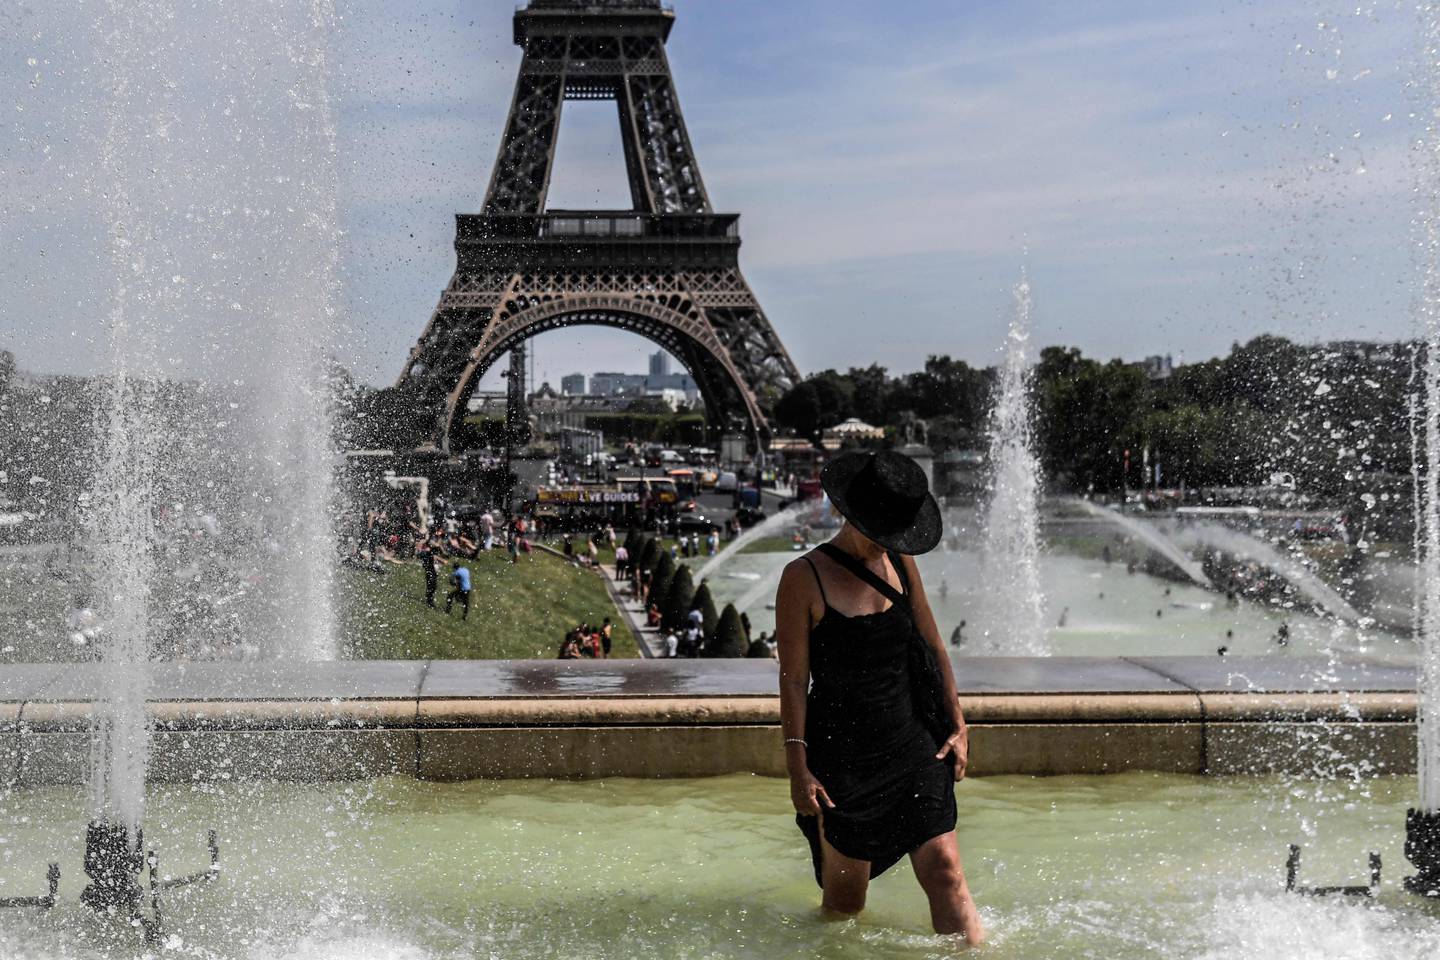 Gran parte de Europa sufría este martes las consecuencias de una intensa ola de calor, la segunda en menos de un mes, mientras Francia se preparaban a batir nuevos récords de temperatura y Portugal seguía luchando contra un incendio forestal.